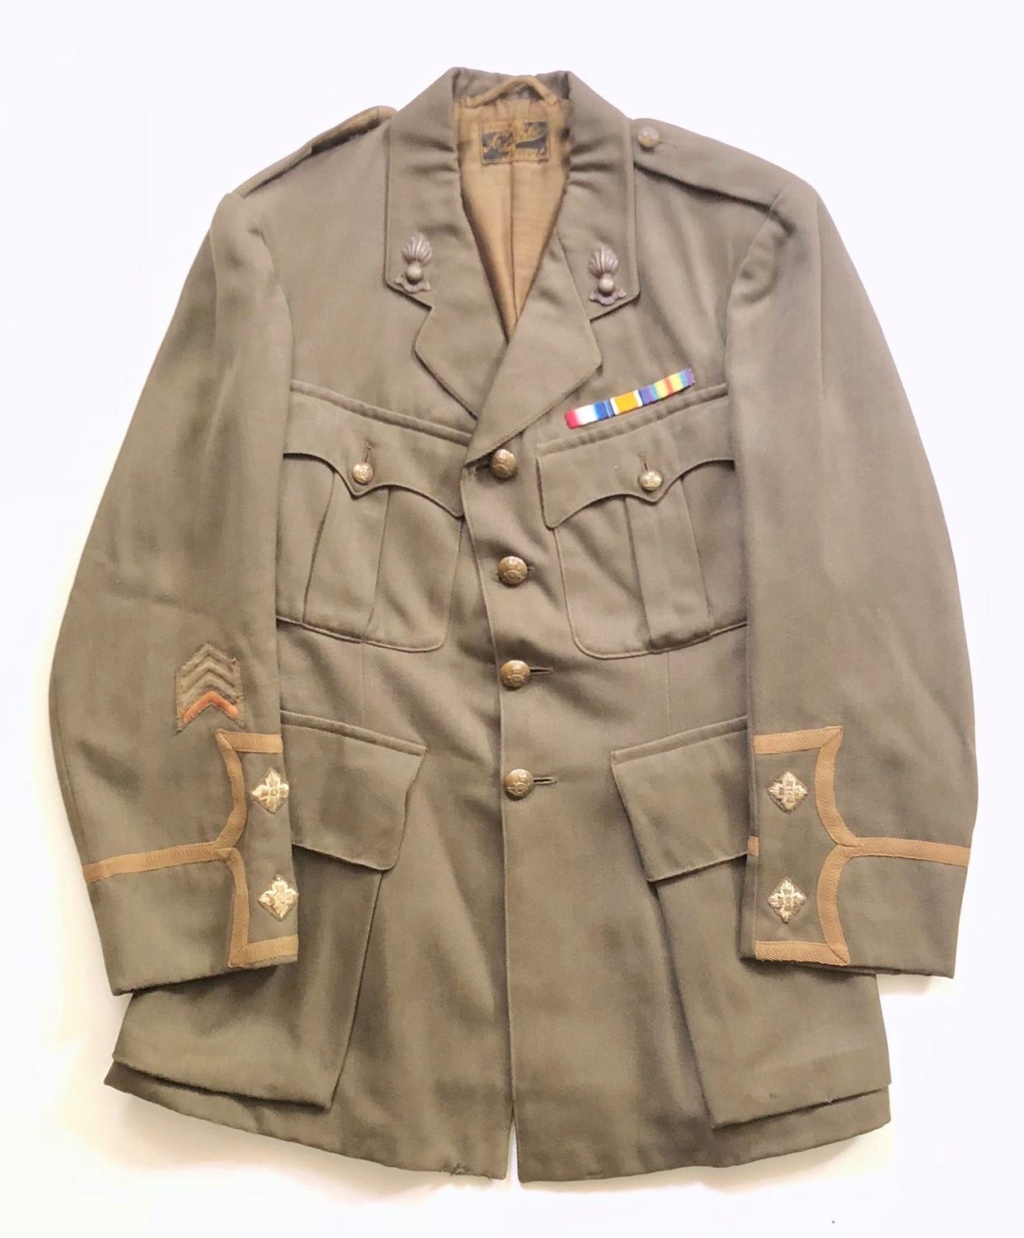 Vareuses et uniformes de l'officier britannique Ww1-ro11